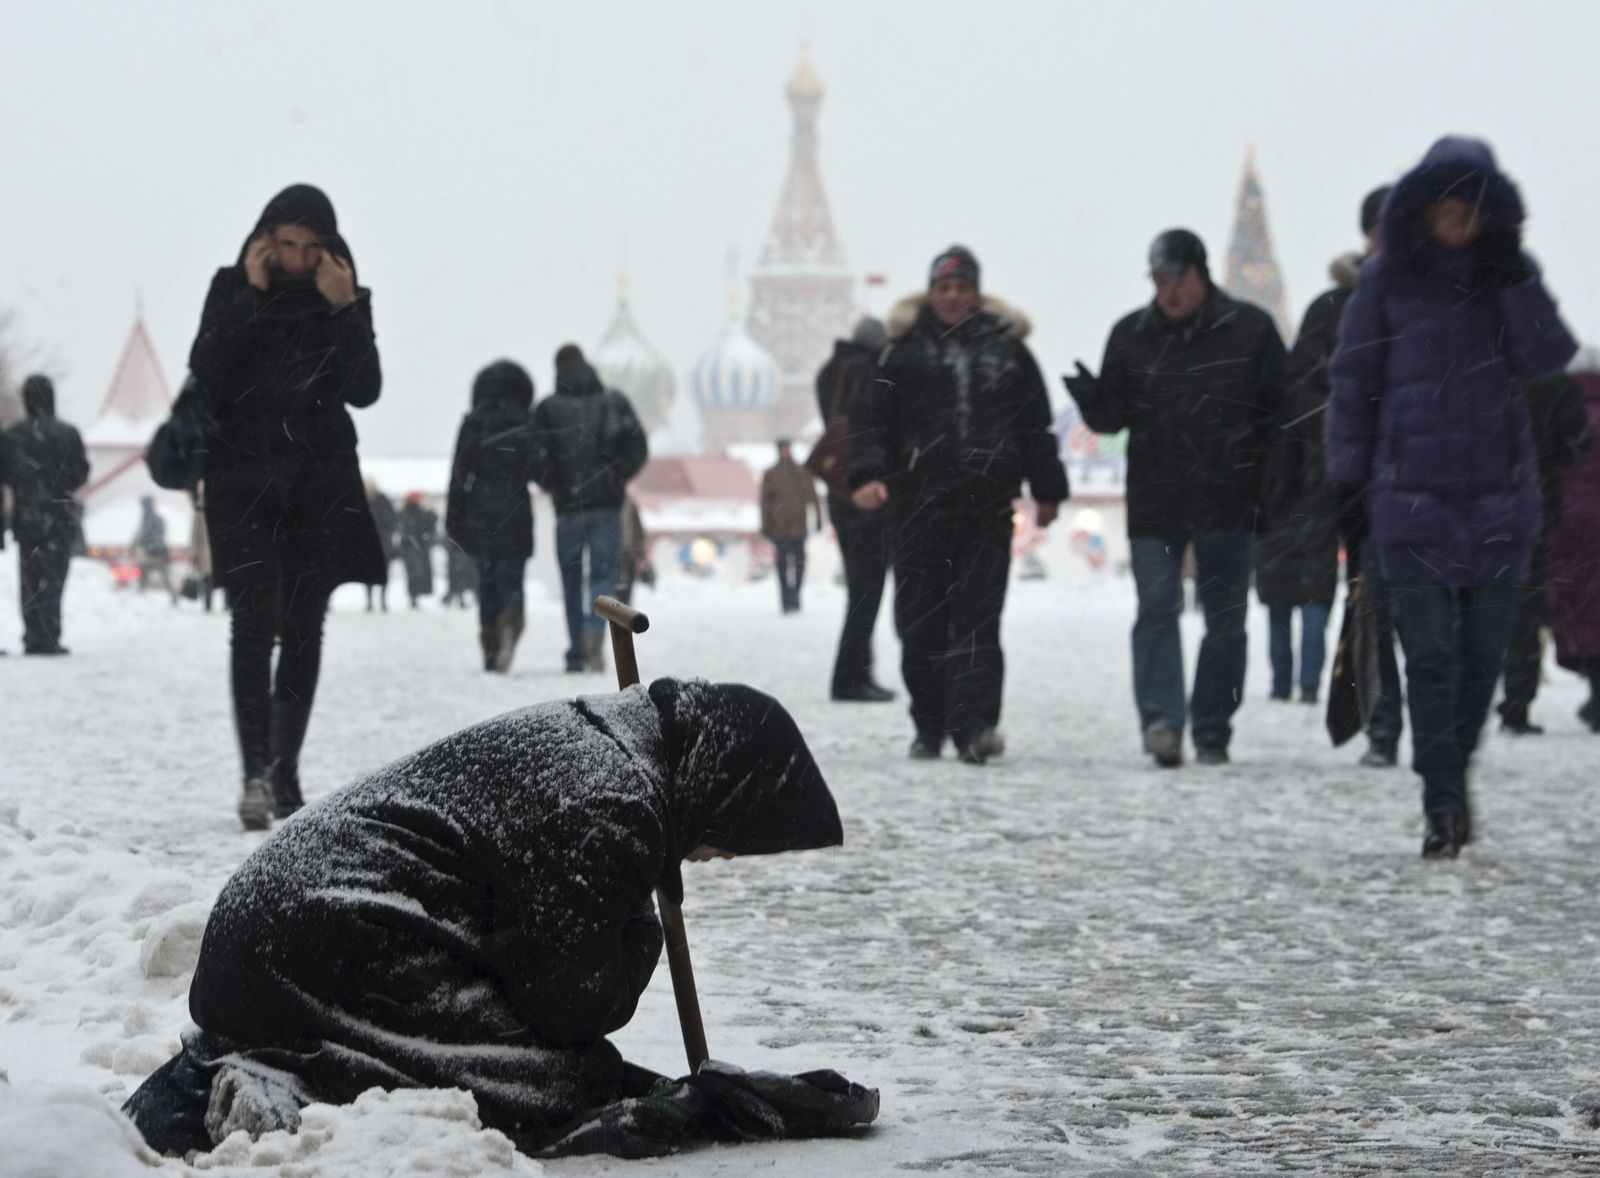 Foto: Una mujer pide limosna durante una fuerte nevada en el centro de Moscú, en diciembre de 2010 (Reuters).